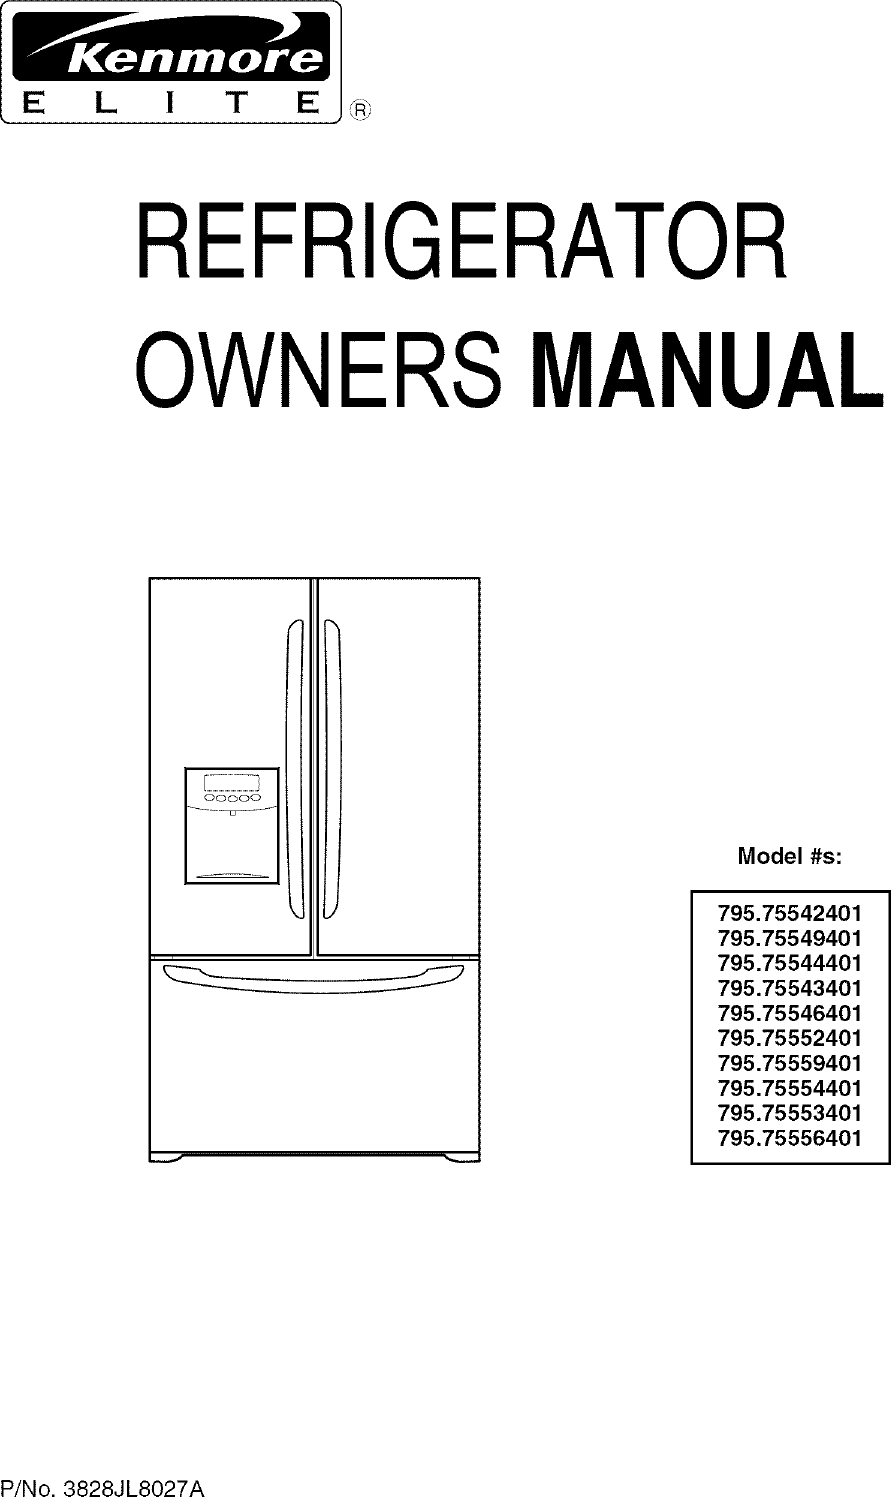 Kenmore 795 755524 Users Manual